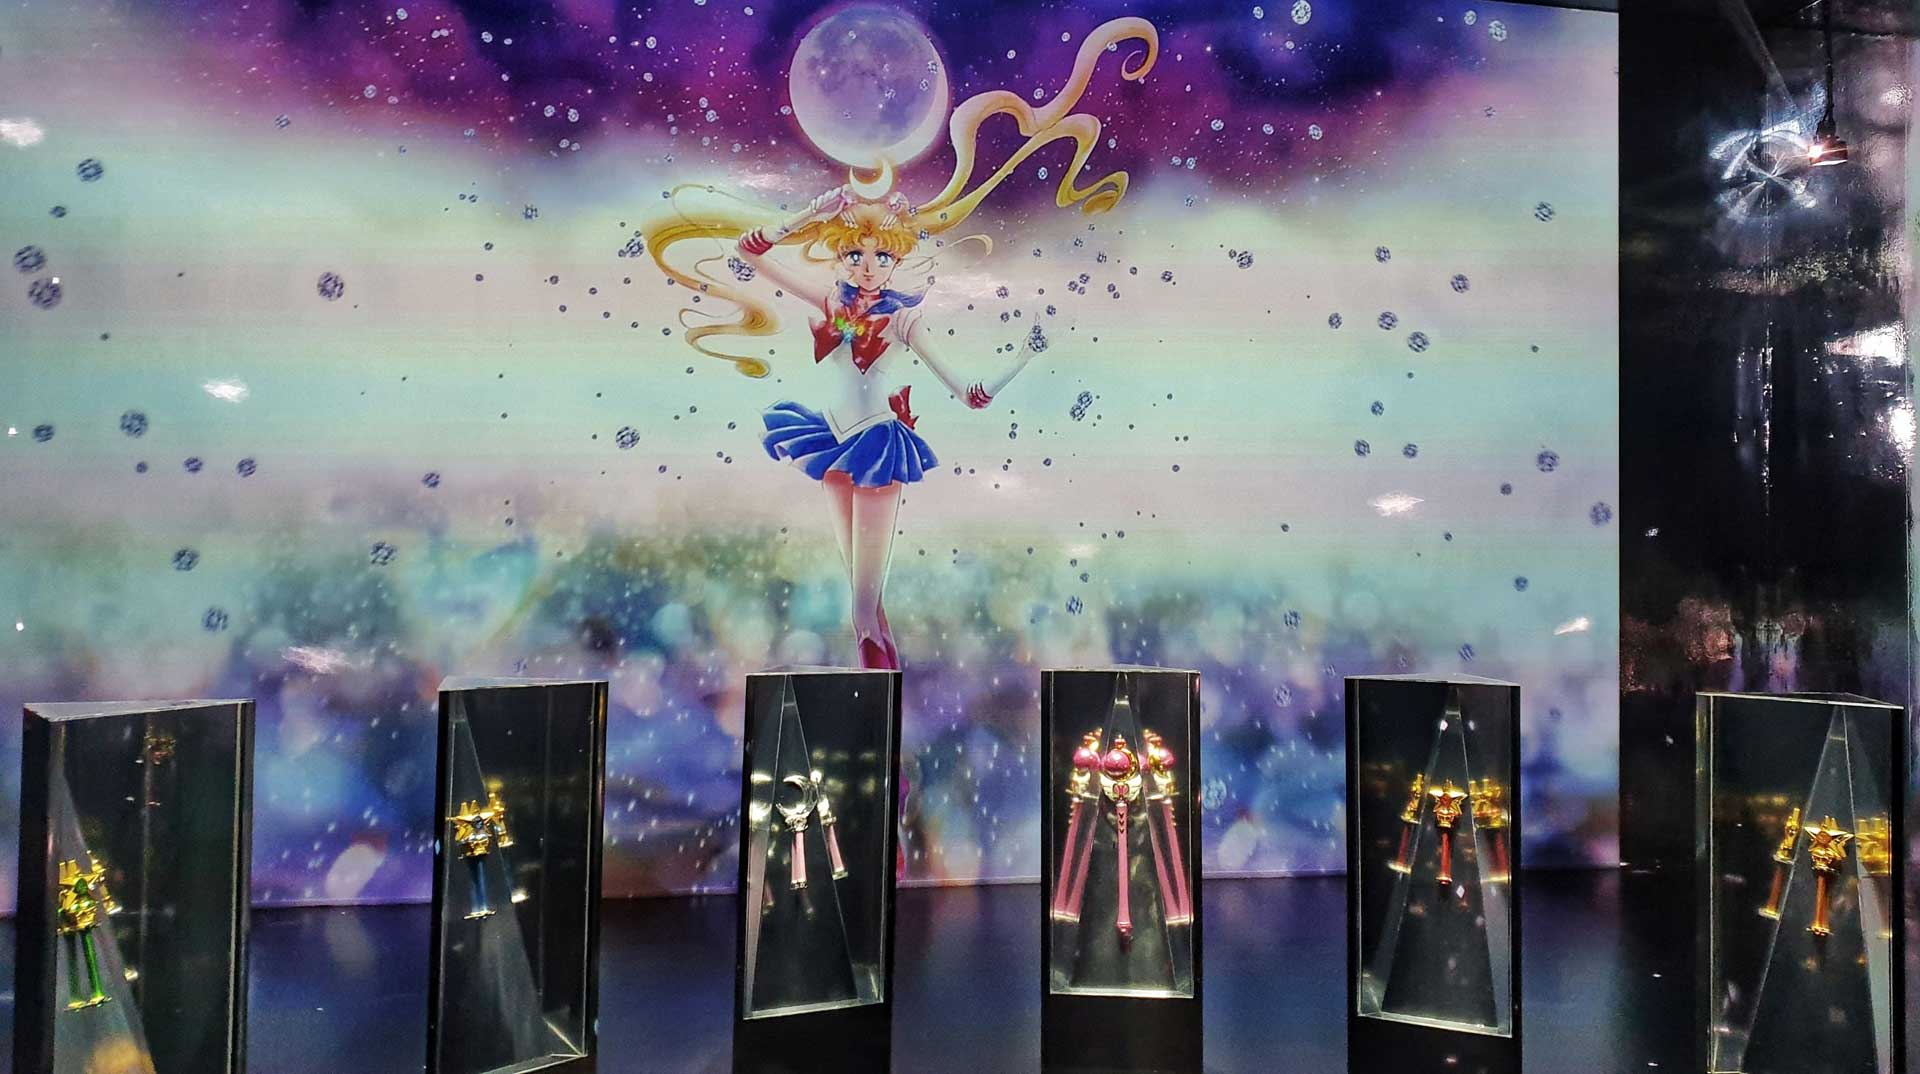 Sailor Moon Museum: Visit Japan's Largest Sailor Moon Exhibition